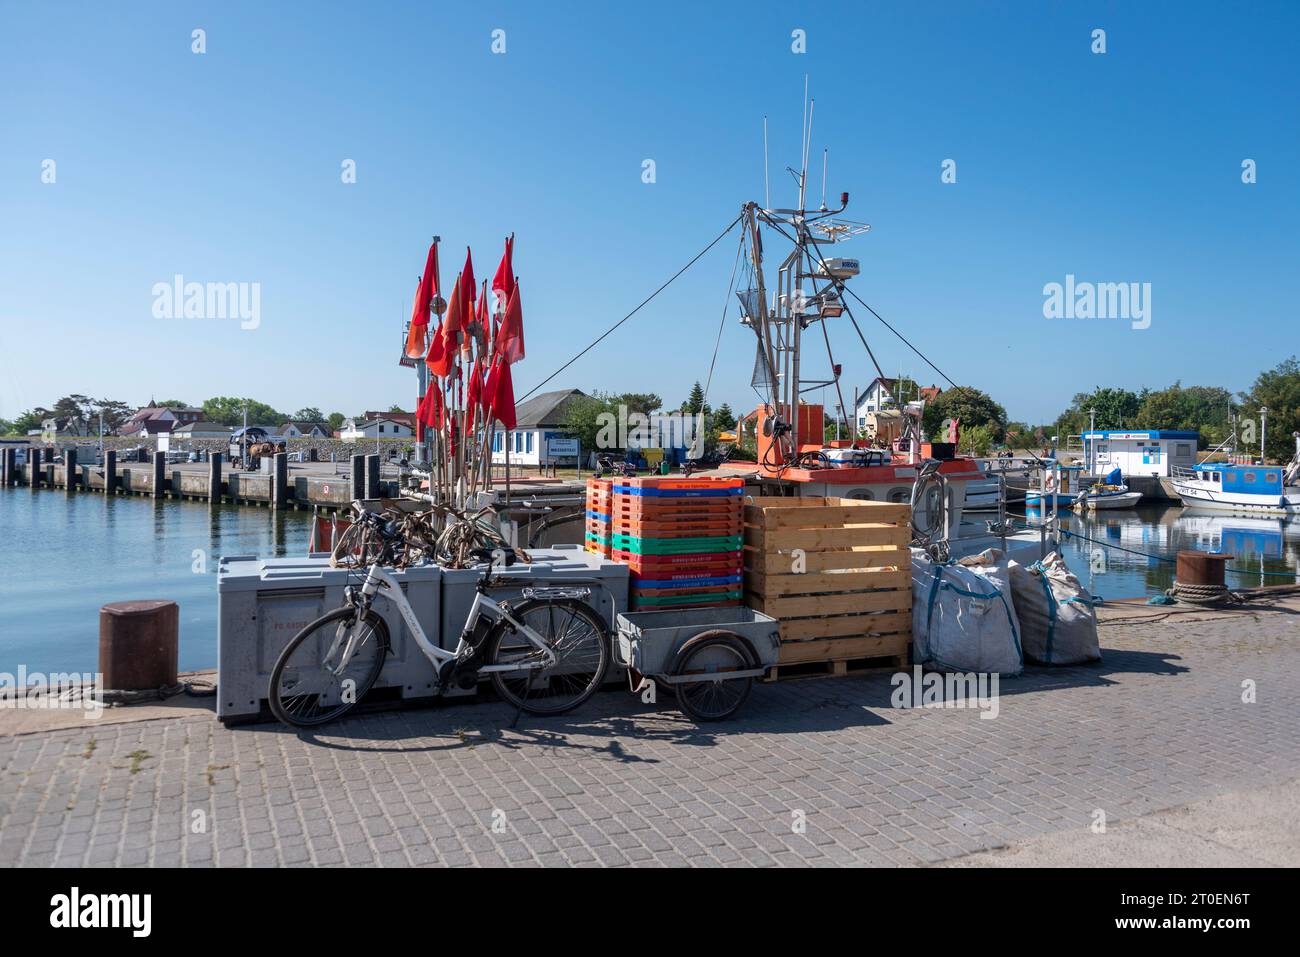 Remorque à vélo, boîtes à poissons, bateaux de pêche dans le port de Vitte, île de Hiddensee, Mecklembourg-Poméranie occidentale, Allemagne Banque D'Images